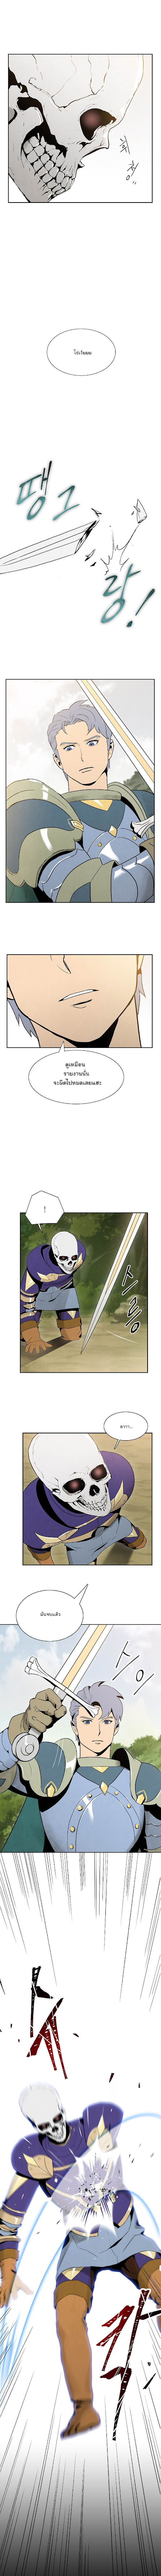 Skeleton Soldier - หน้า 8